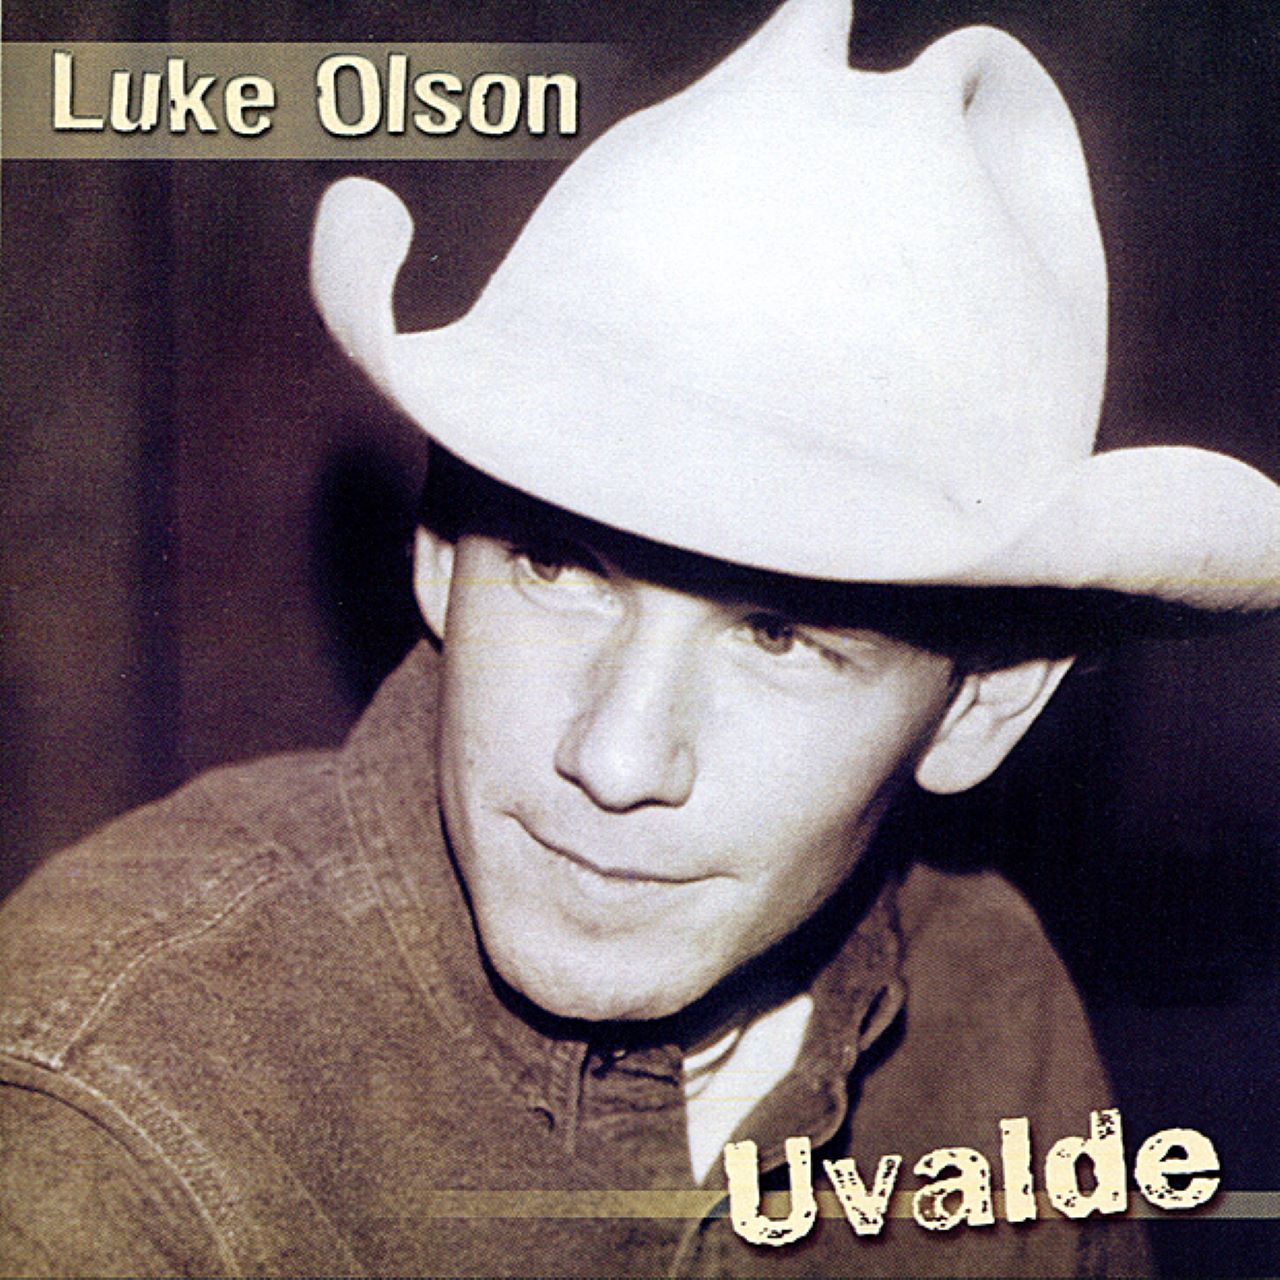 Luke Olson - Uvalde cover album